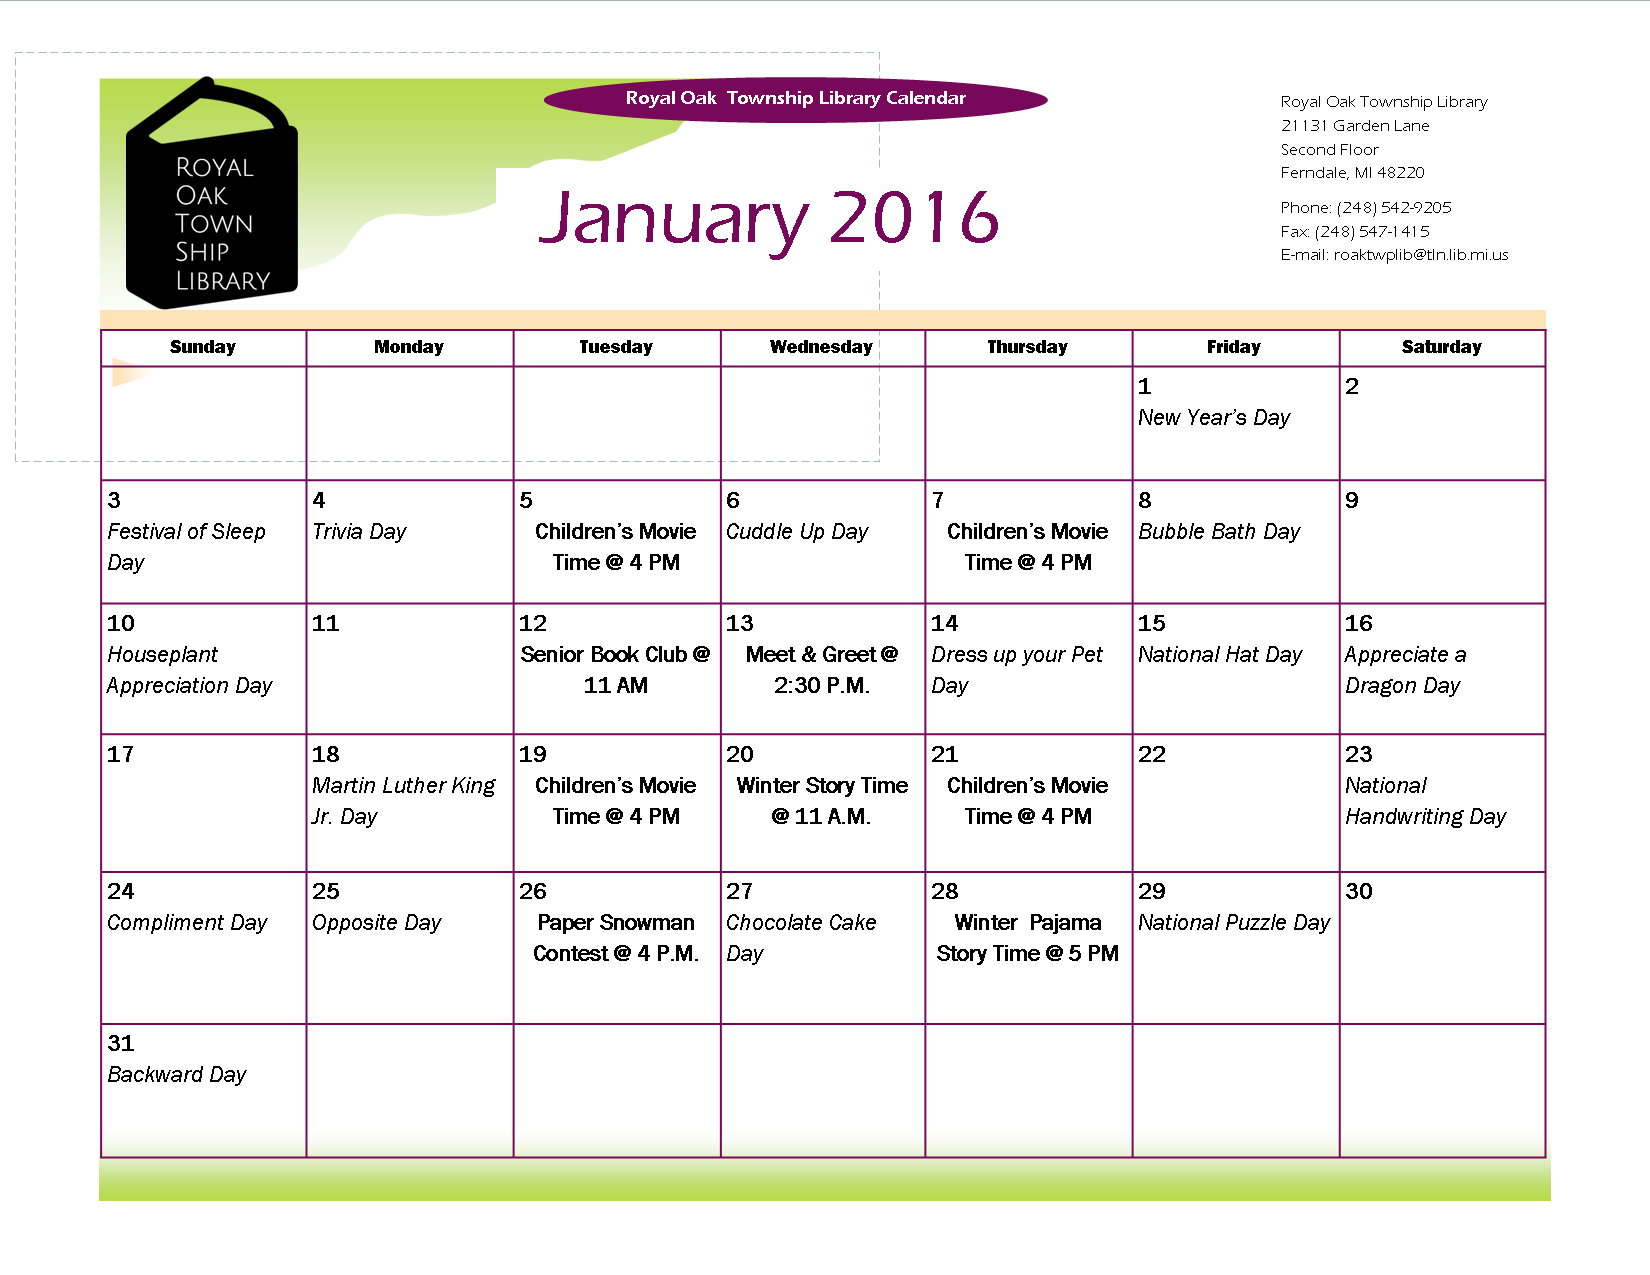 January 2016 Calendar.png